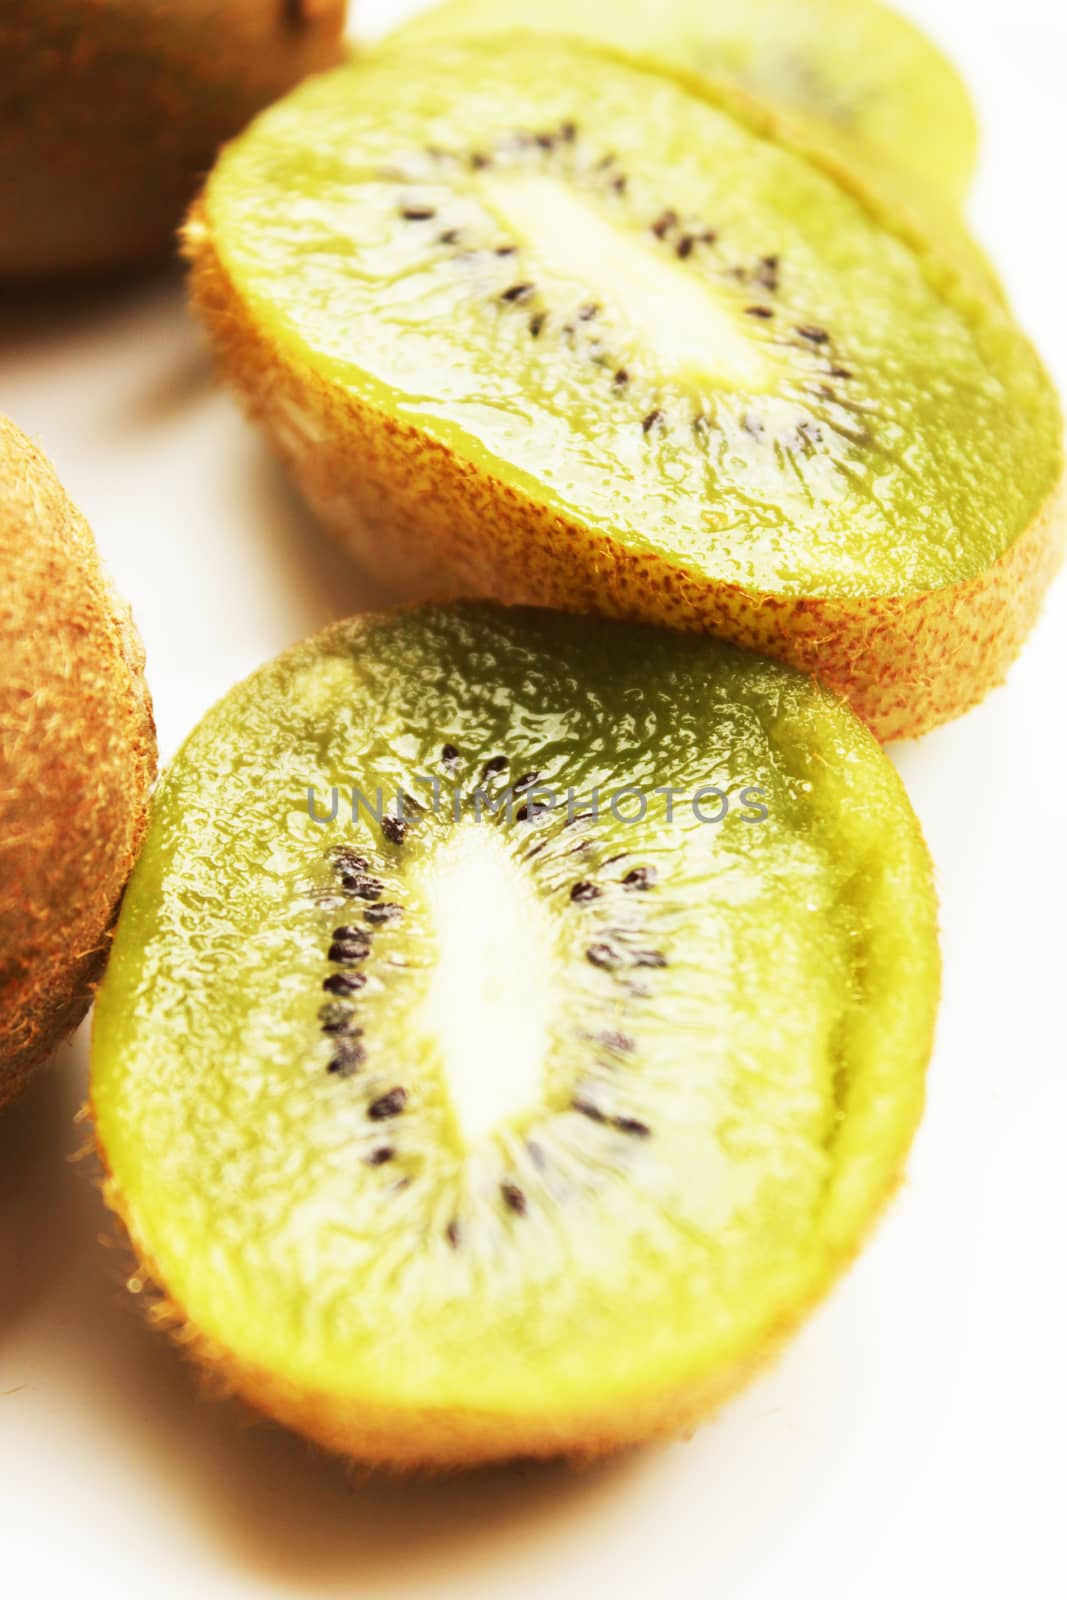 Kiwi fruit by AlexDePario